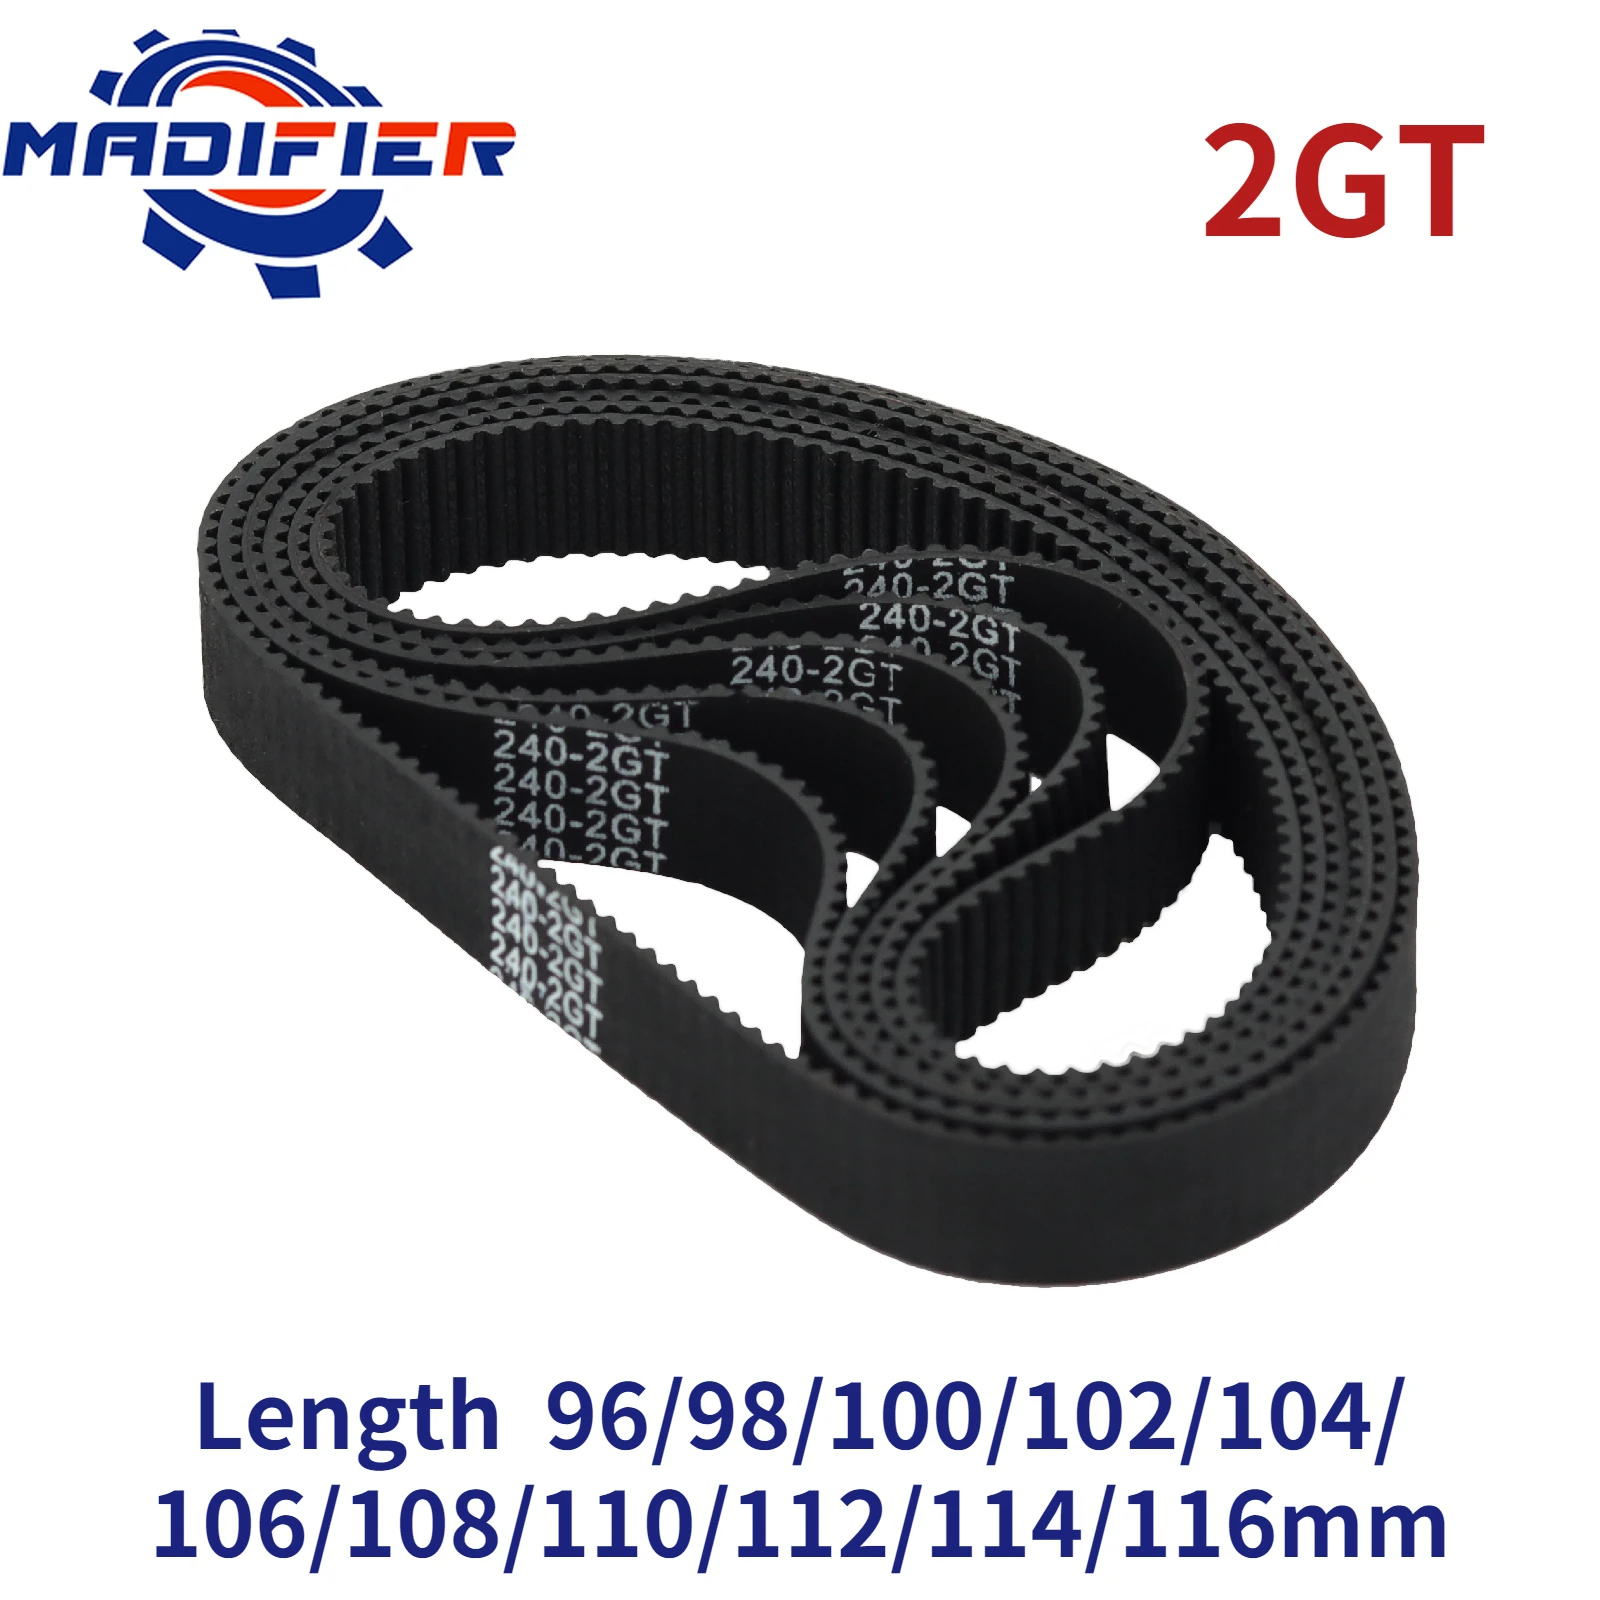 

C-1 3D Printer Parts GT2 6mm 2GT Closed Loop Rubber Timing Belt 96 98 100 102 104 106 108 110 112 114 116 mm